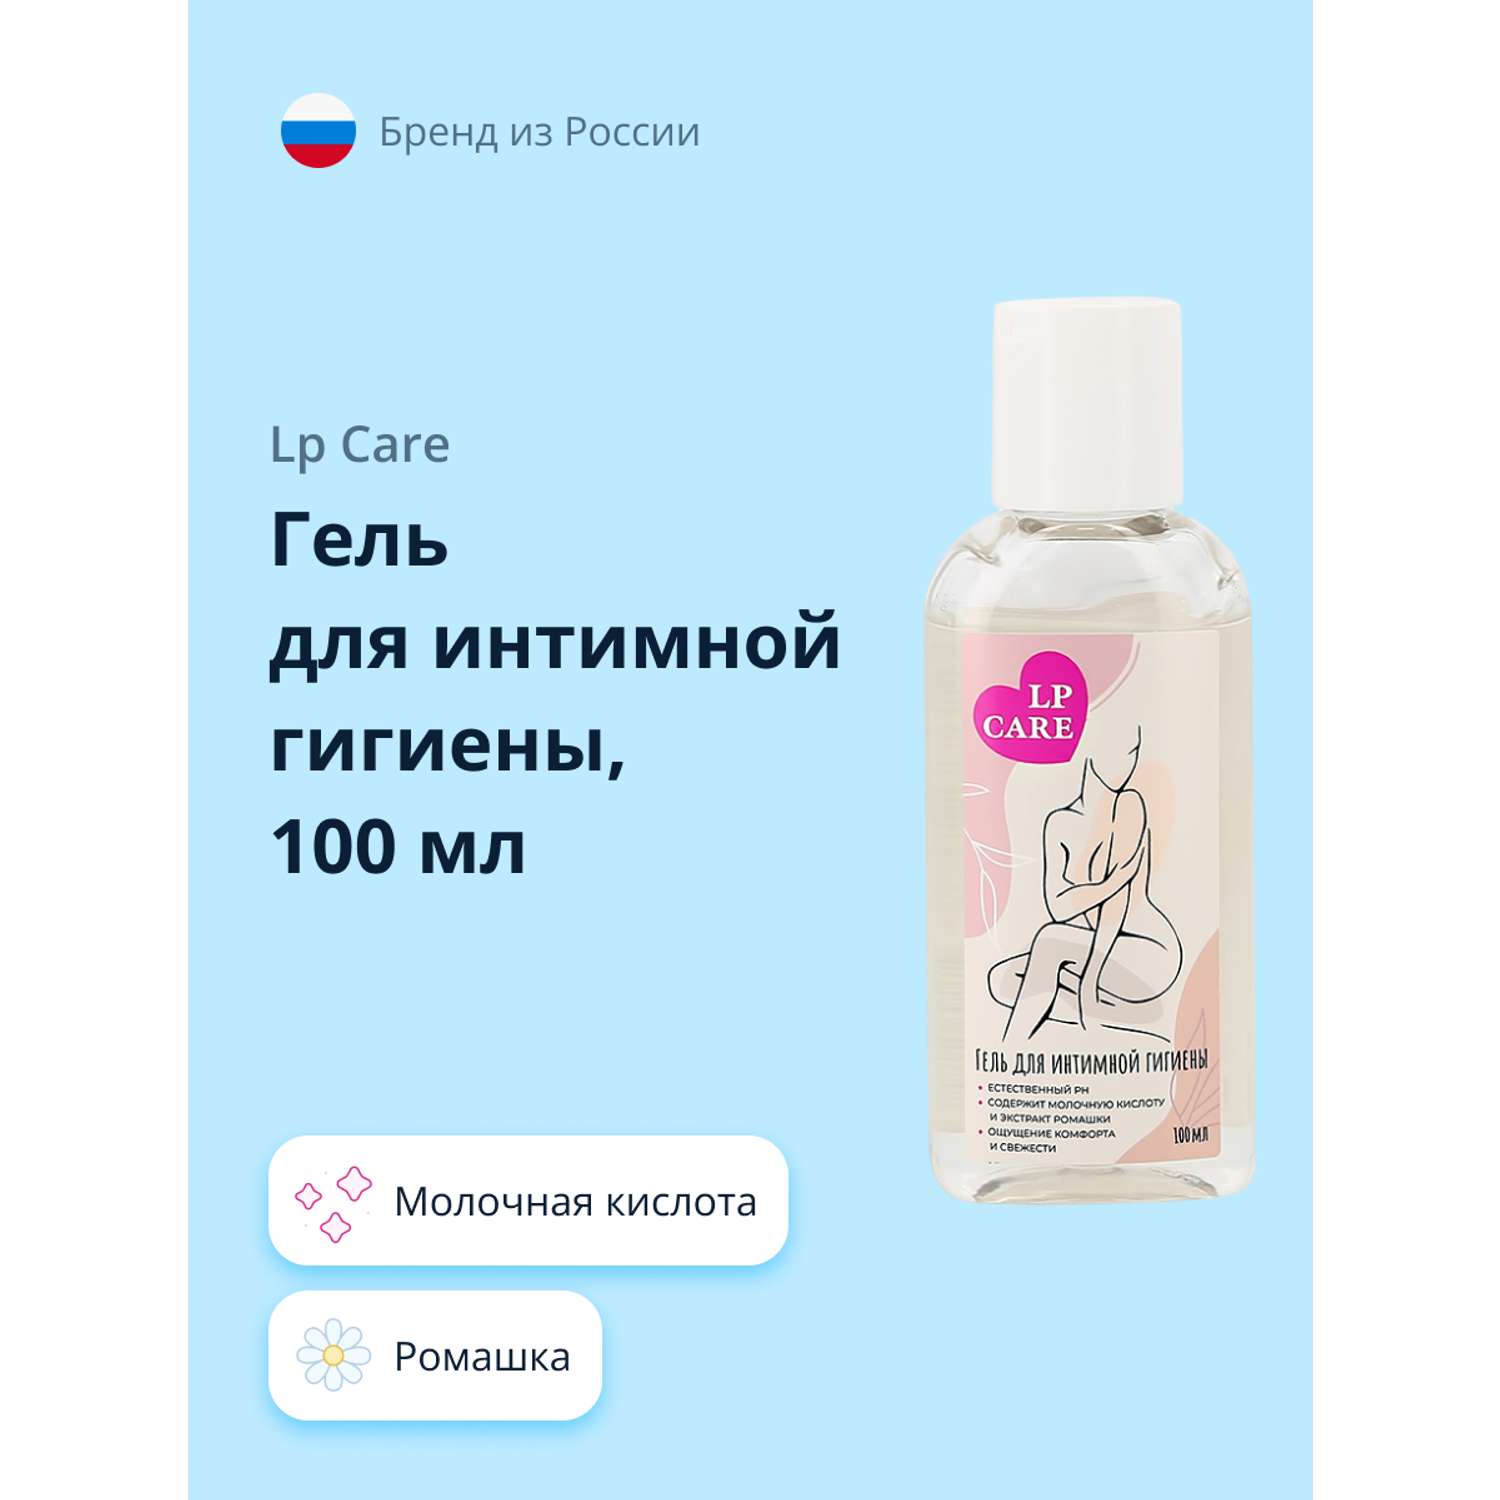 Российские производители гелей для интимной гигиены